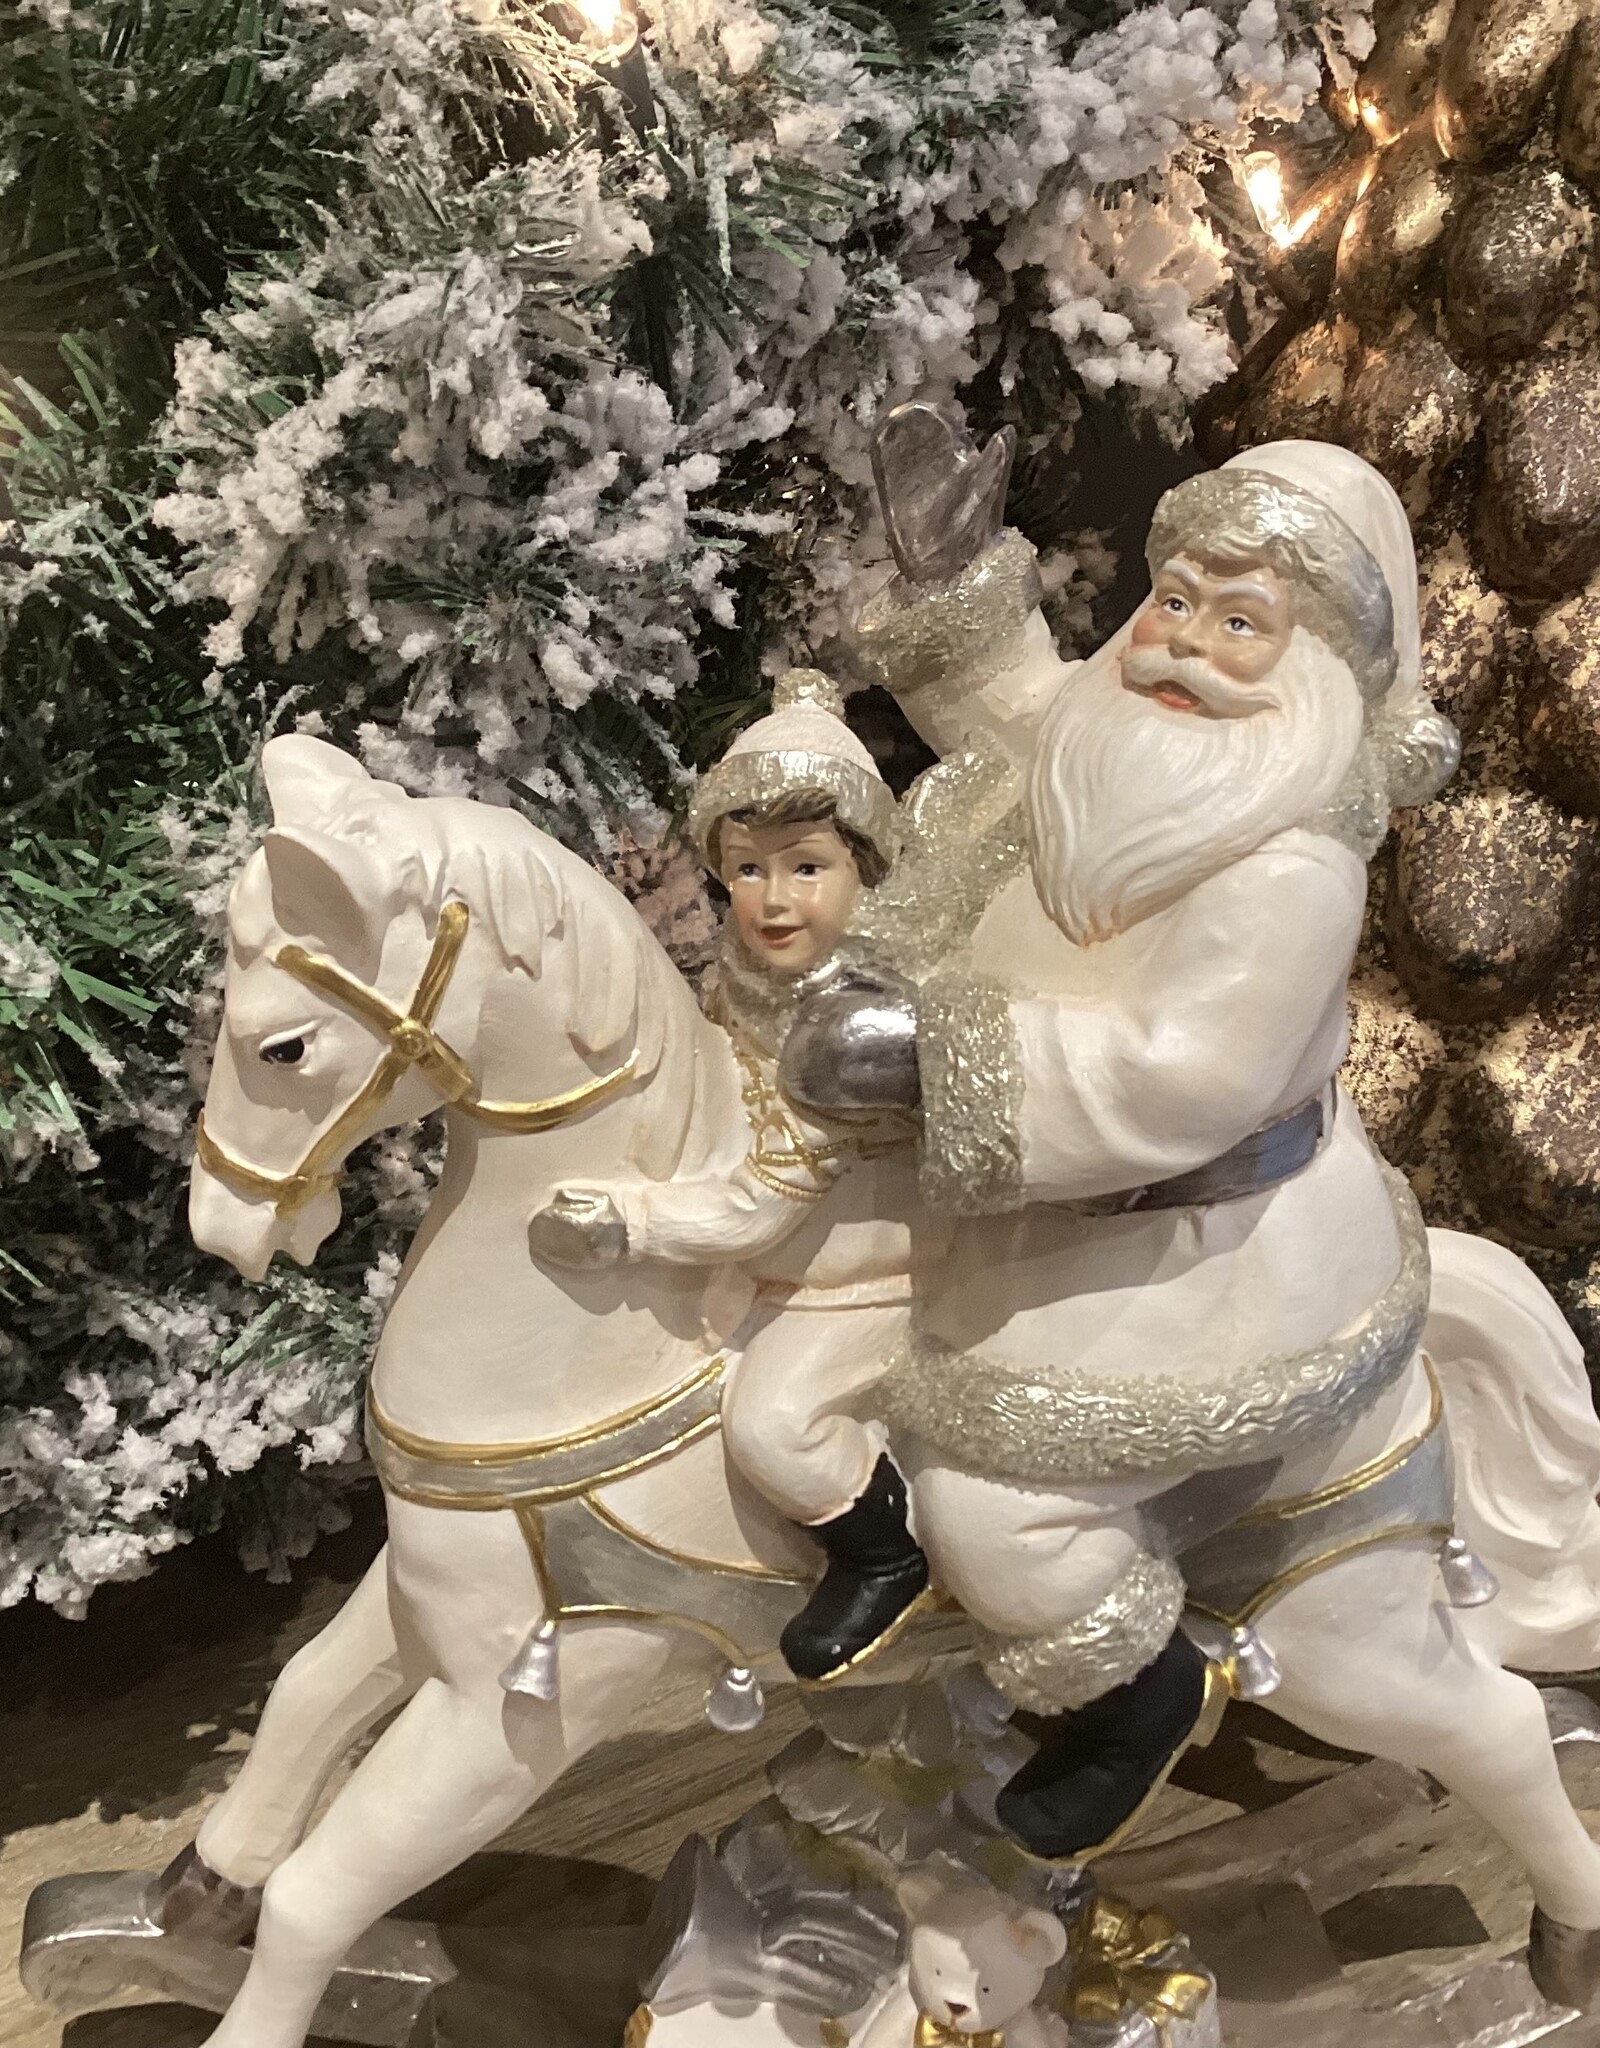 Père Noël sur cheval à bascule